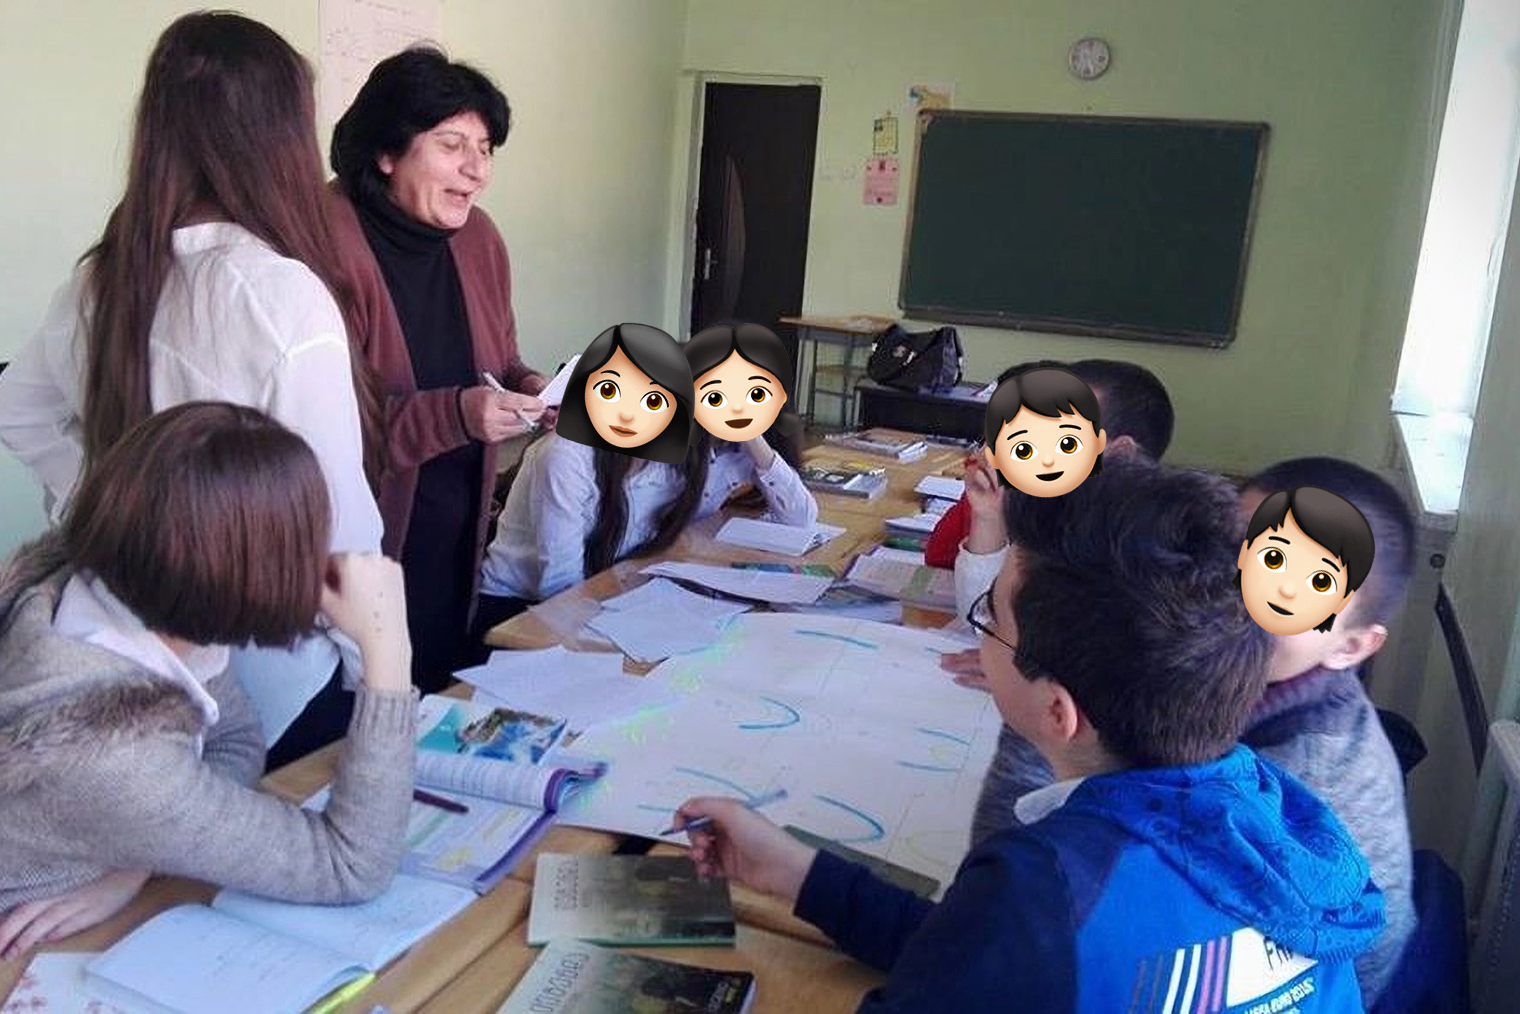 В грузинских школах учителей не принято называть по отчеству. Обычно к имени добавляют «мас» — сокращение от «масцавлебели», что означает «учитель». Источник: 136skola.ge